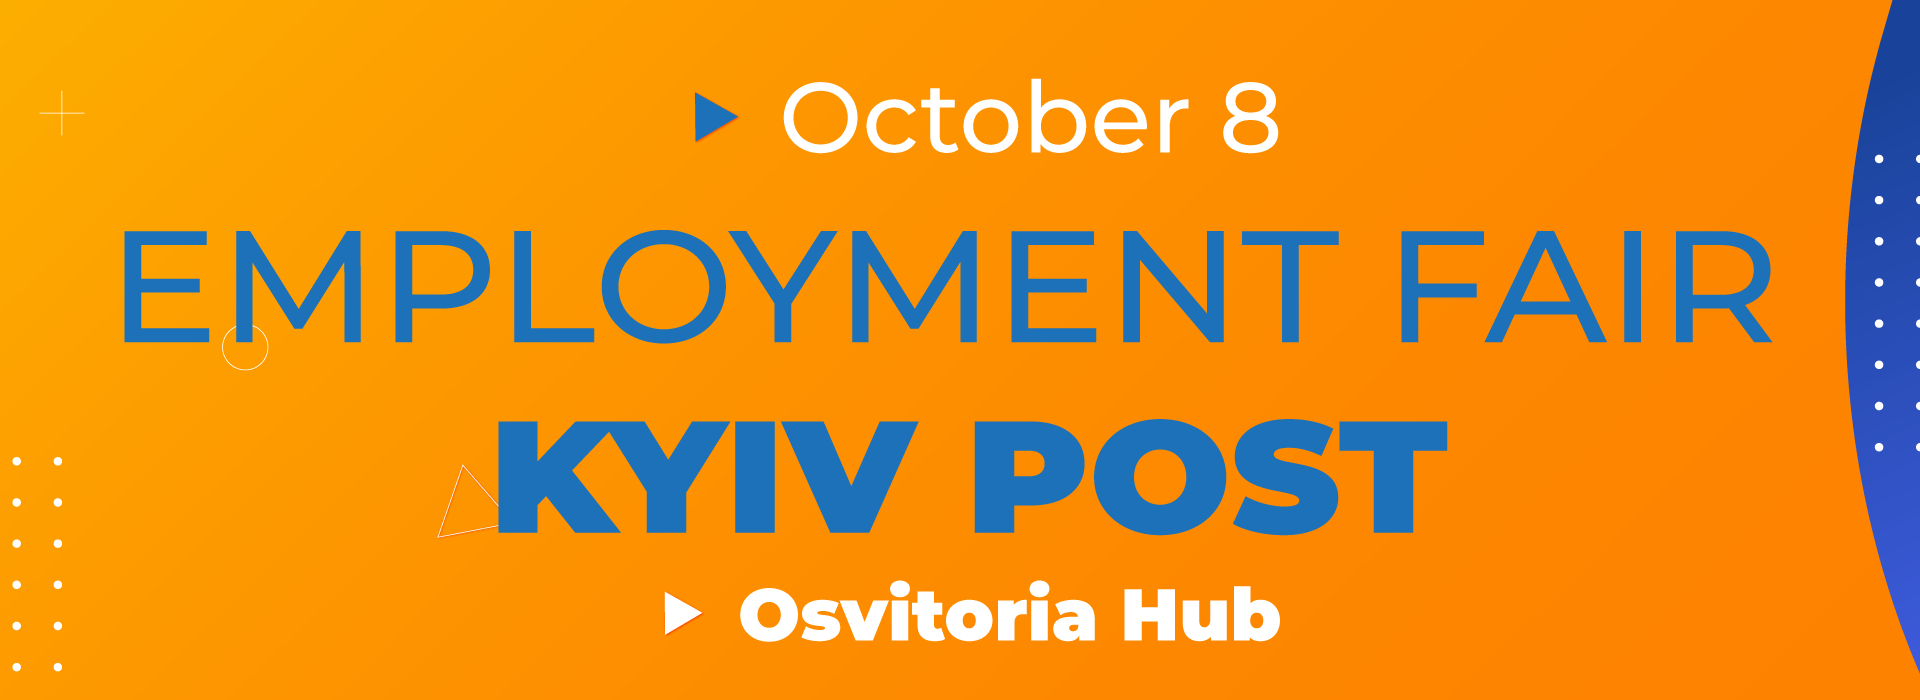 Kyiv Post Employment Fair